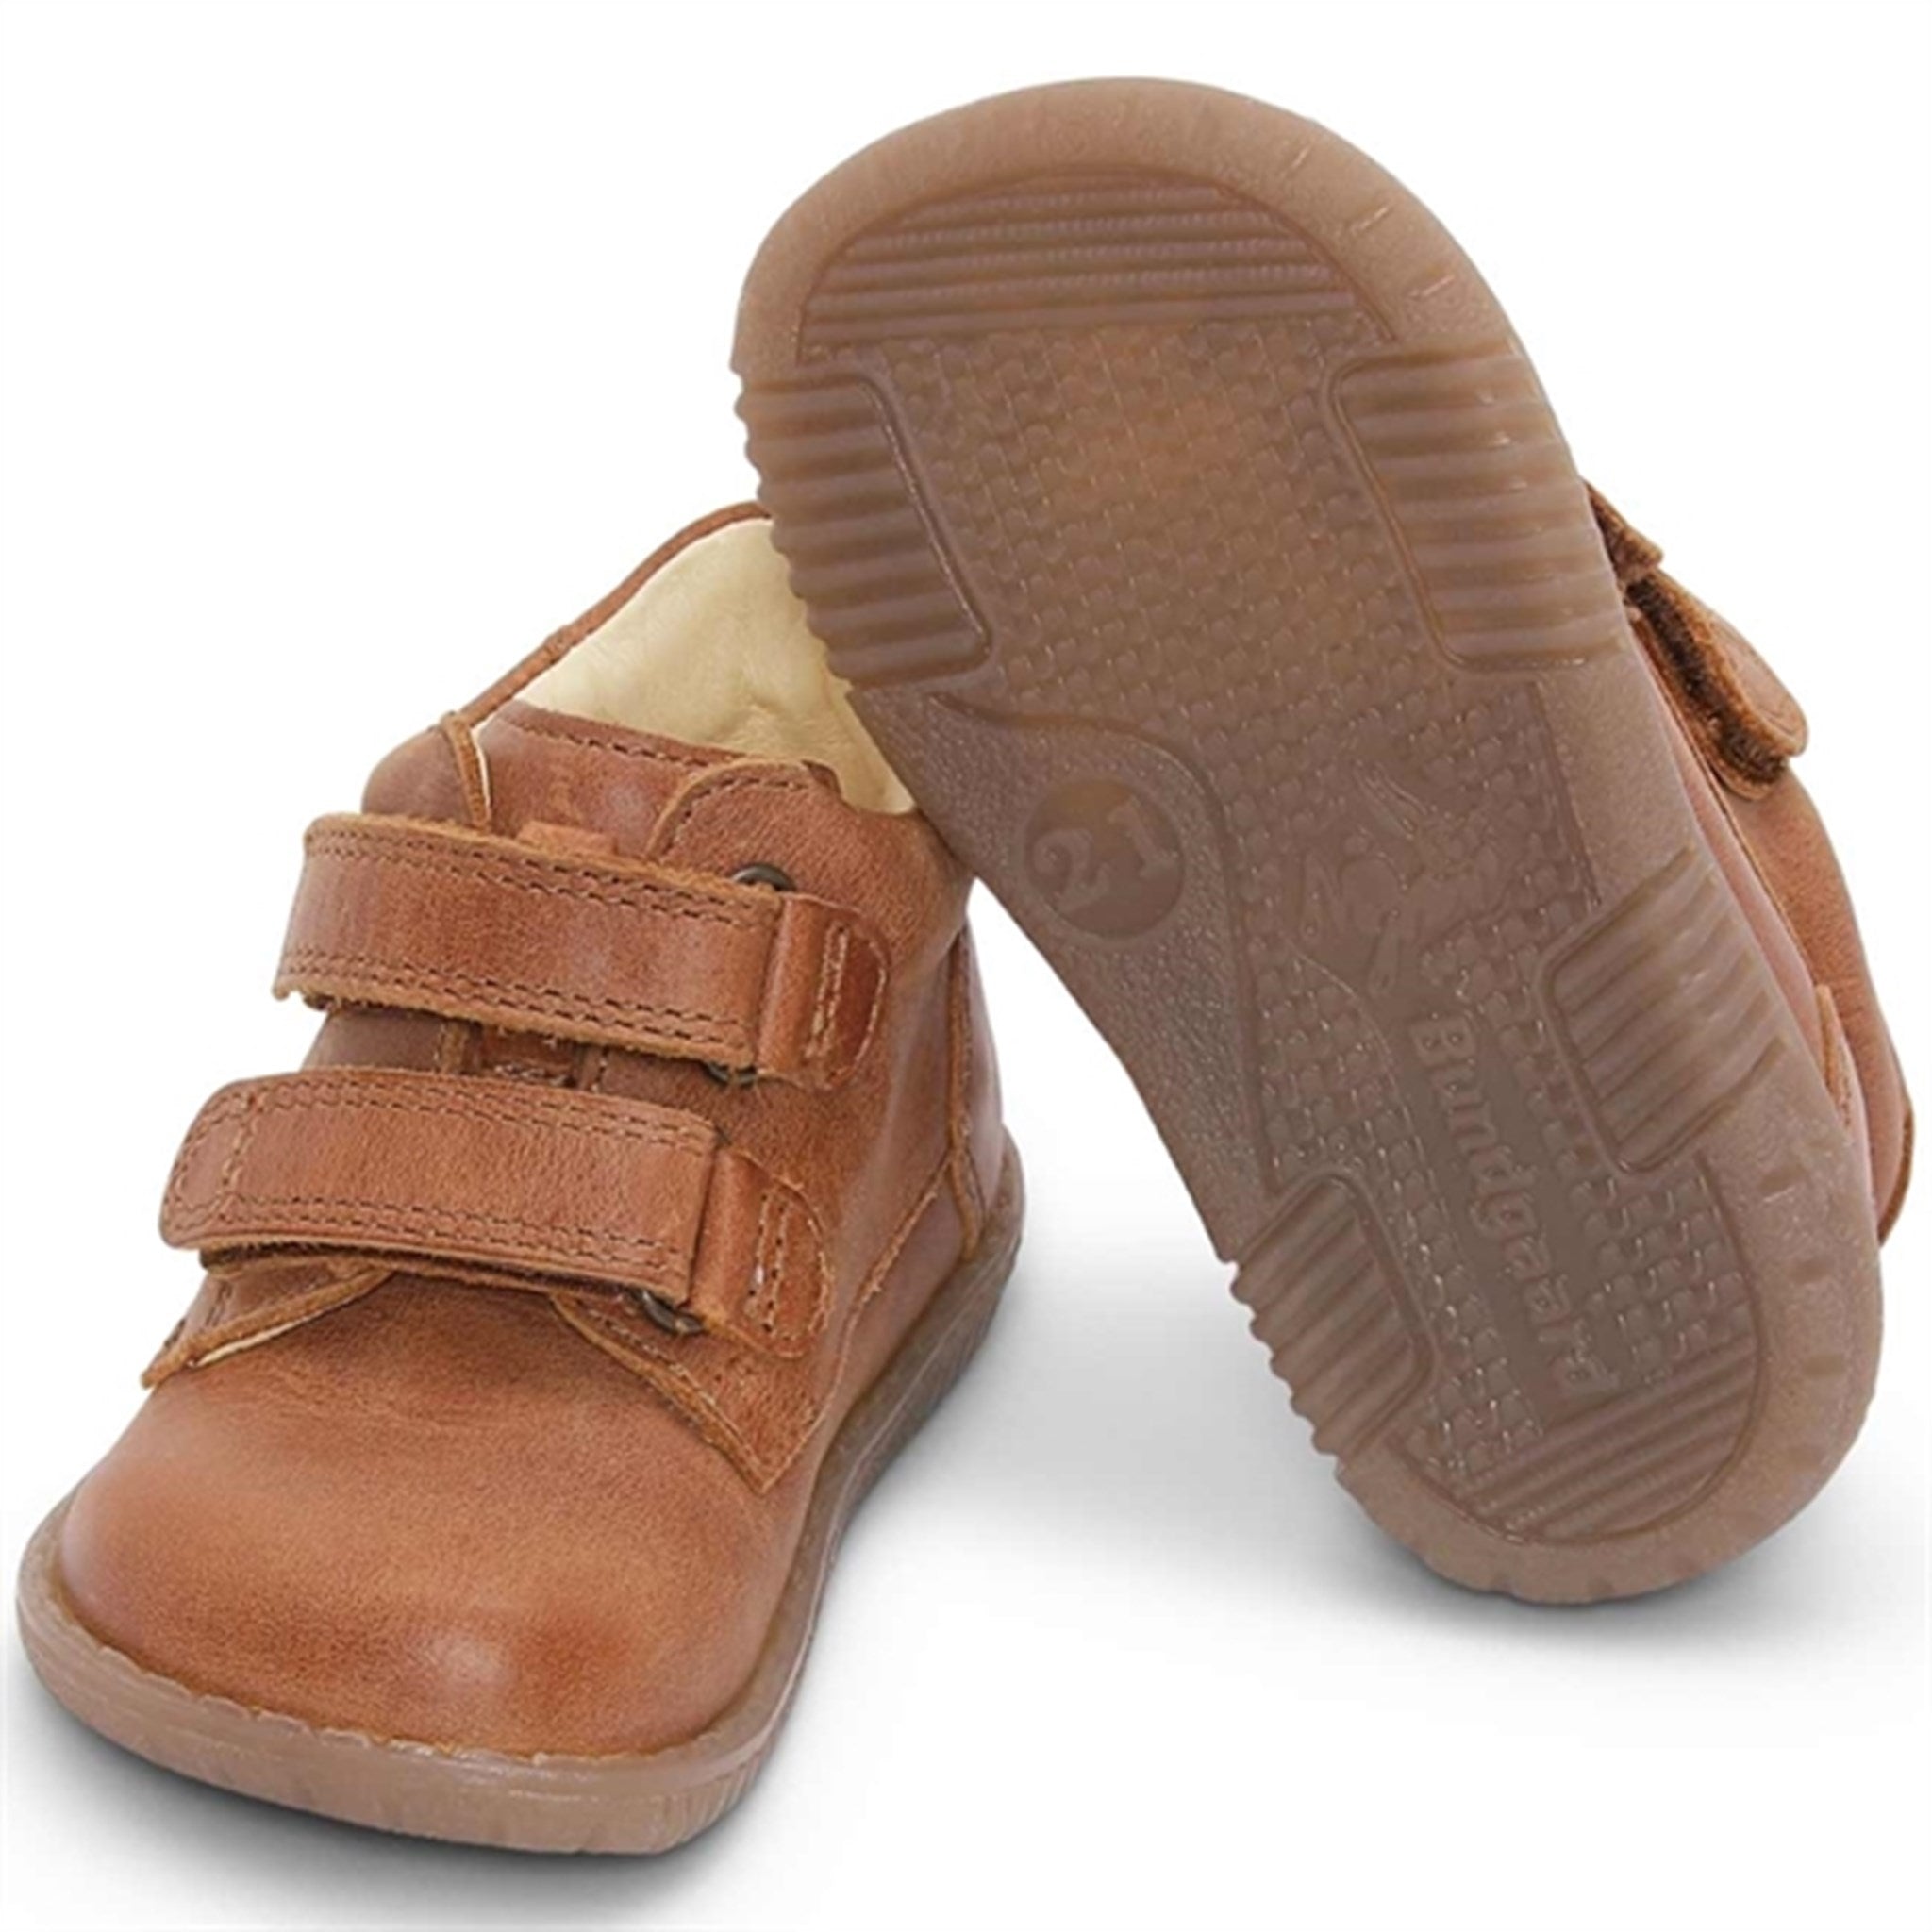 Bundgaard Ruby Kardborre Tan Shoes 2